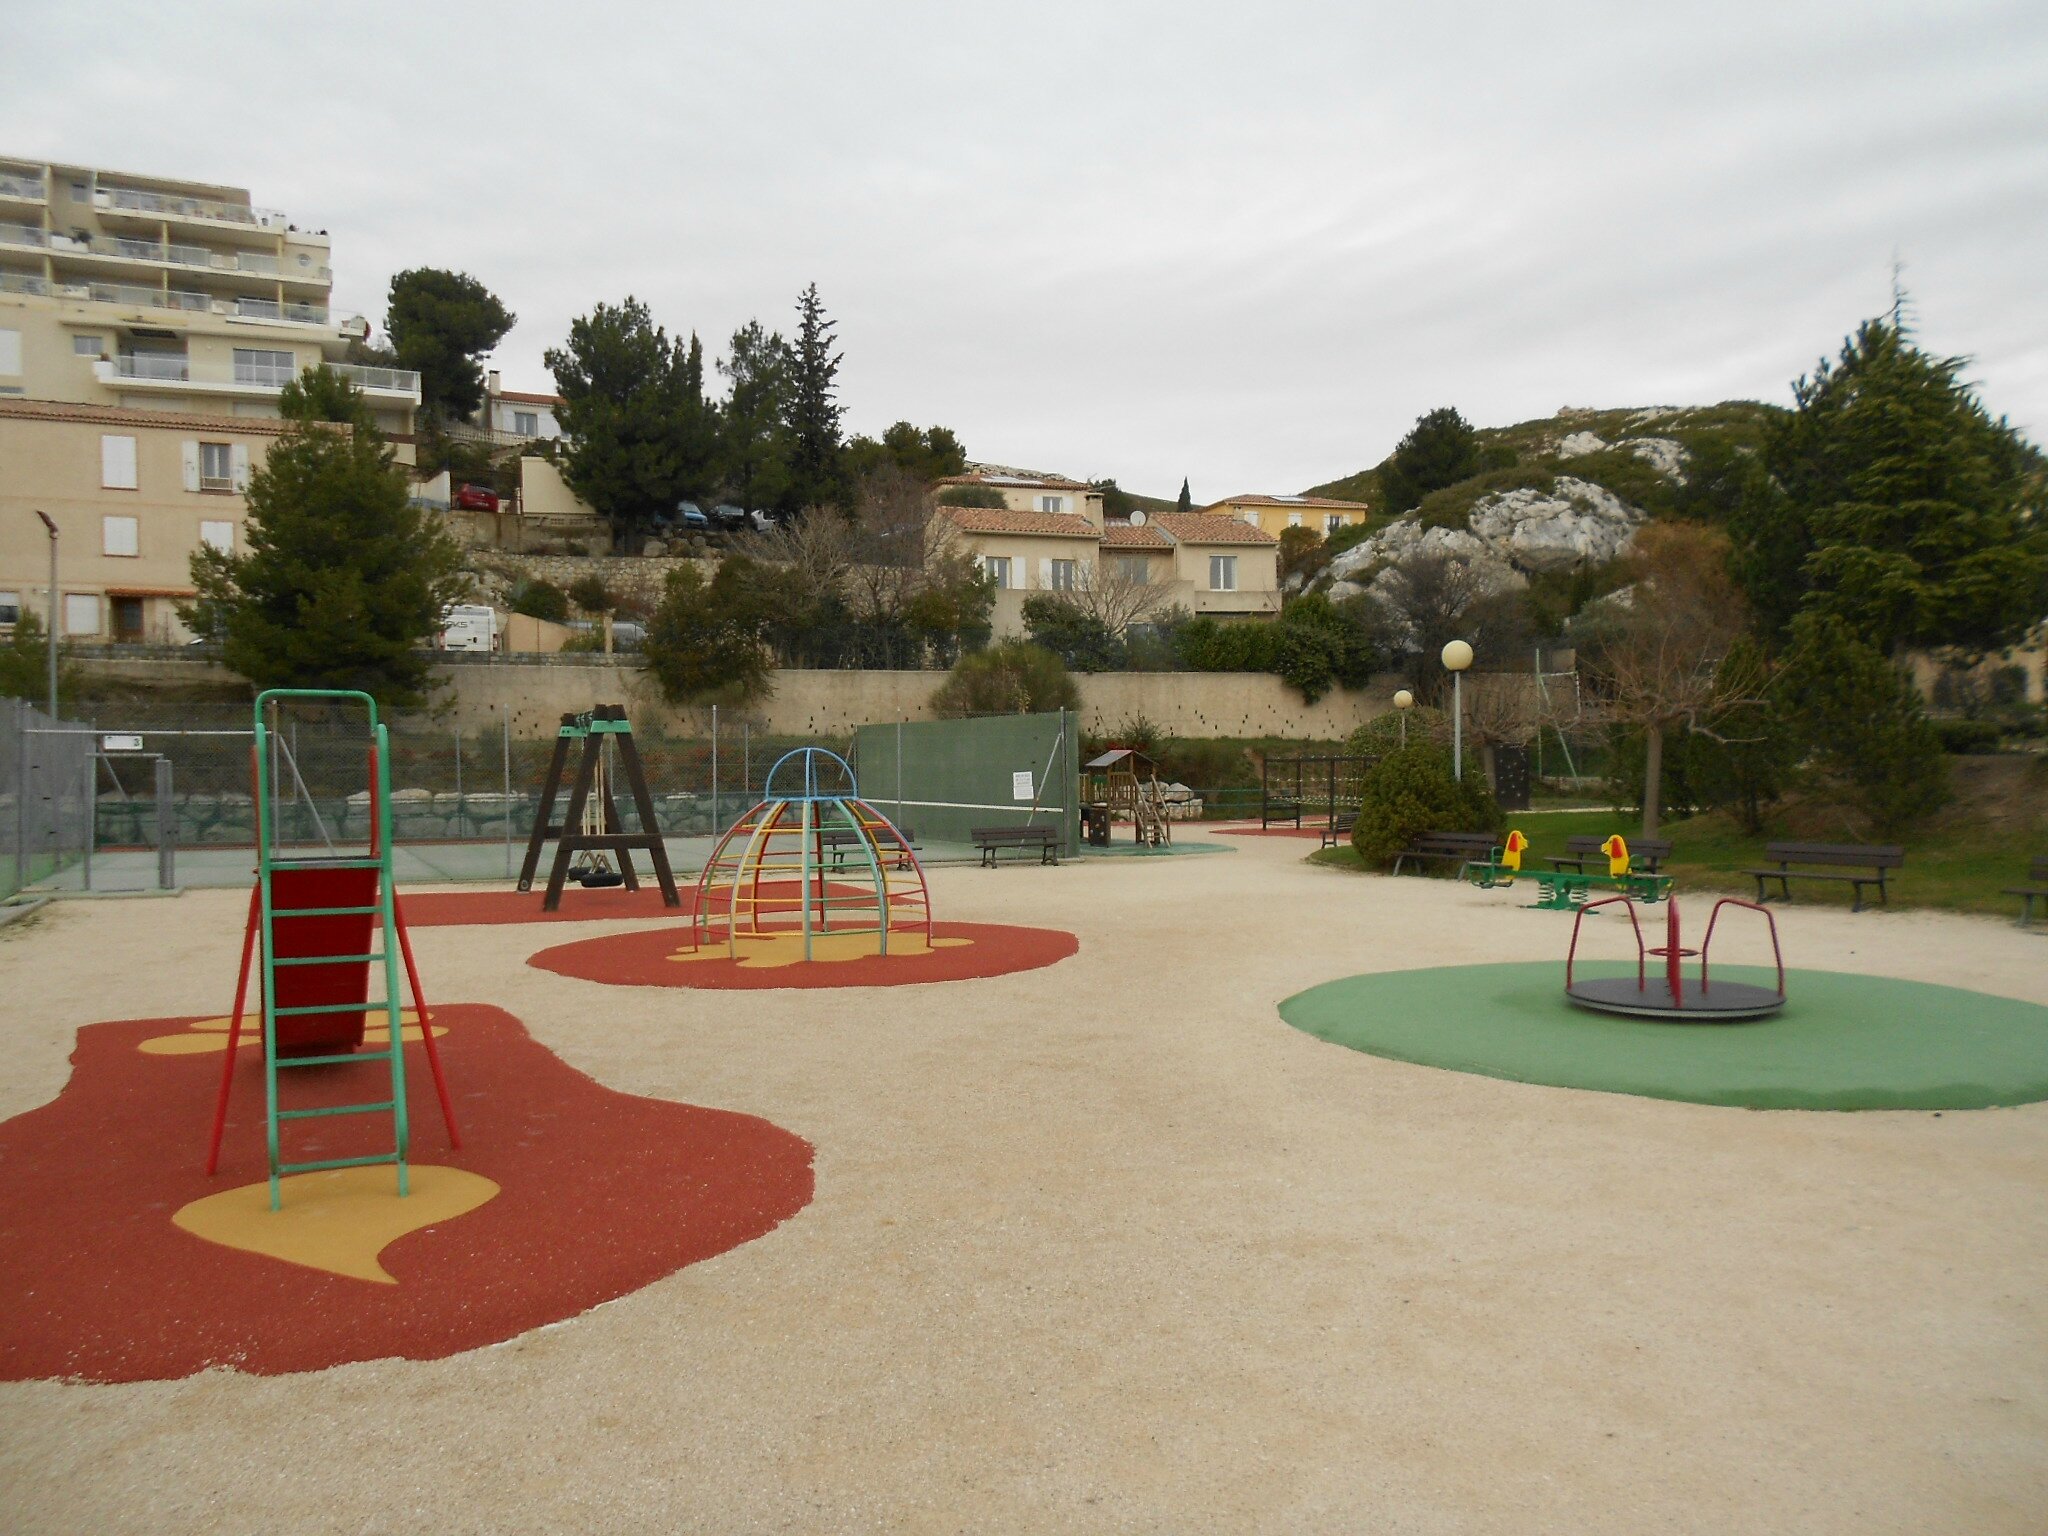  Terrain d' entraînement au tennis avec son mur, clôturé et jeux pour enfants à proximité.